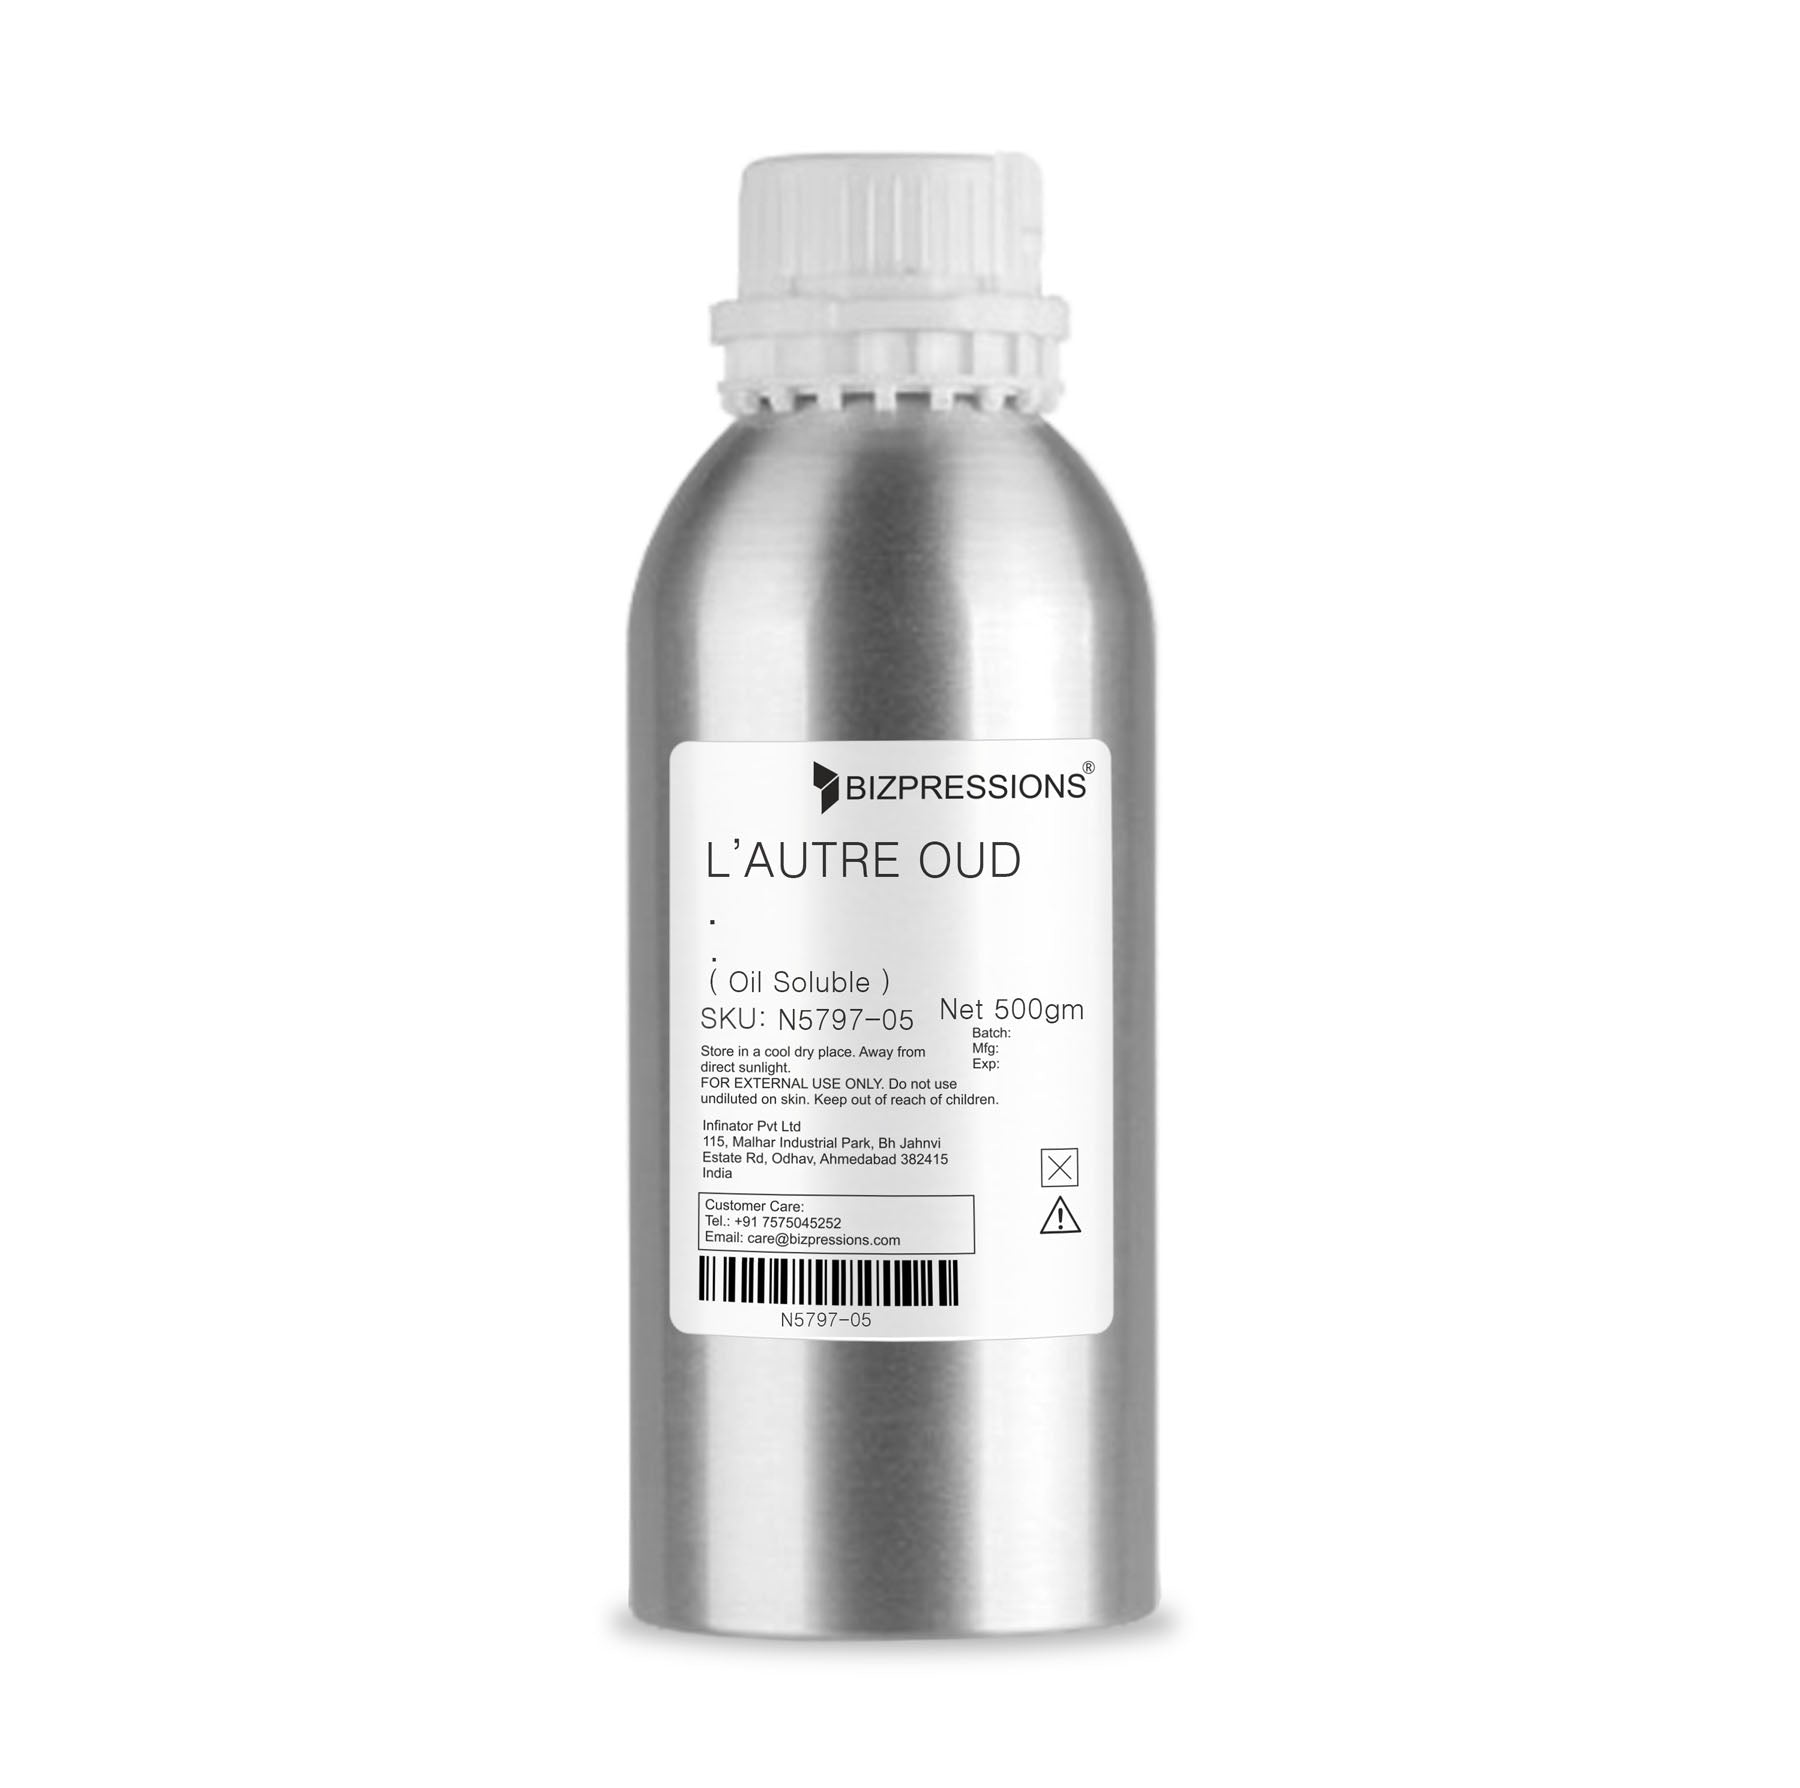 L'AUTRE OUD - Fragrance ( Oil Soluble ) - 500 gm